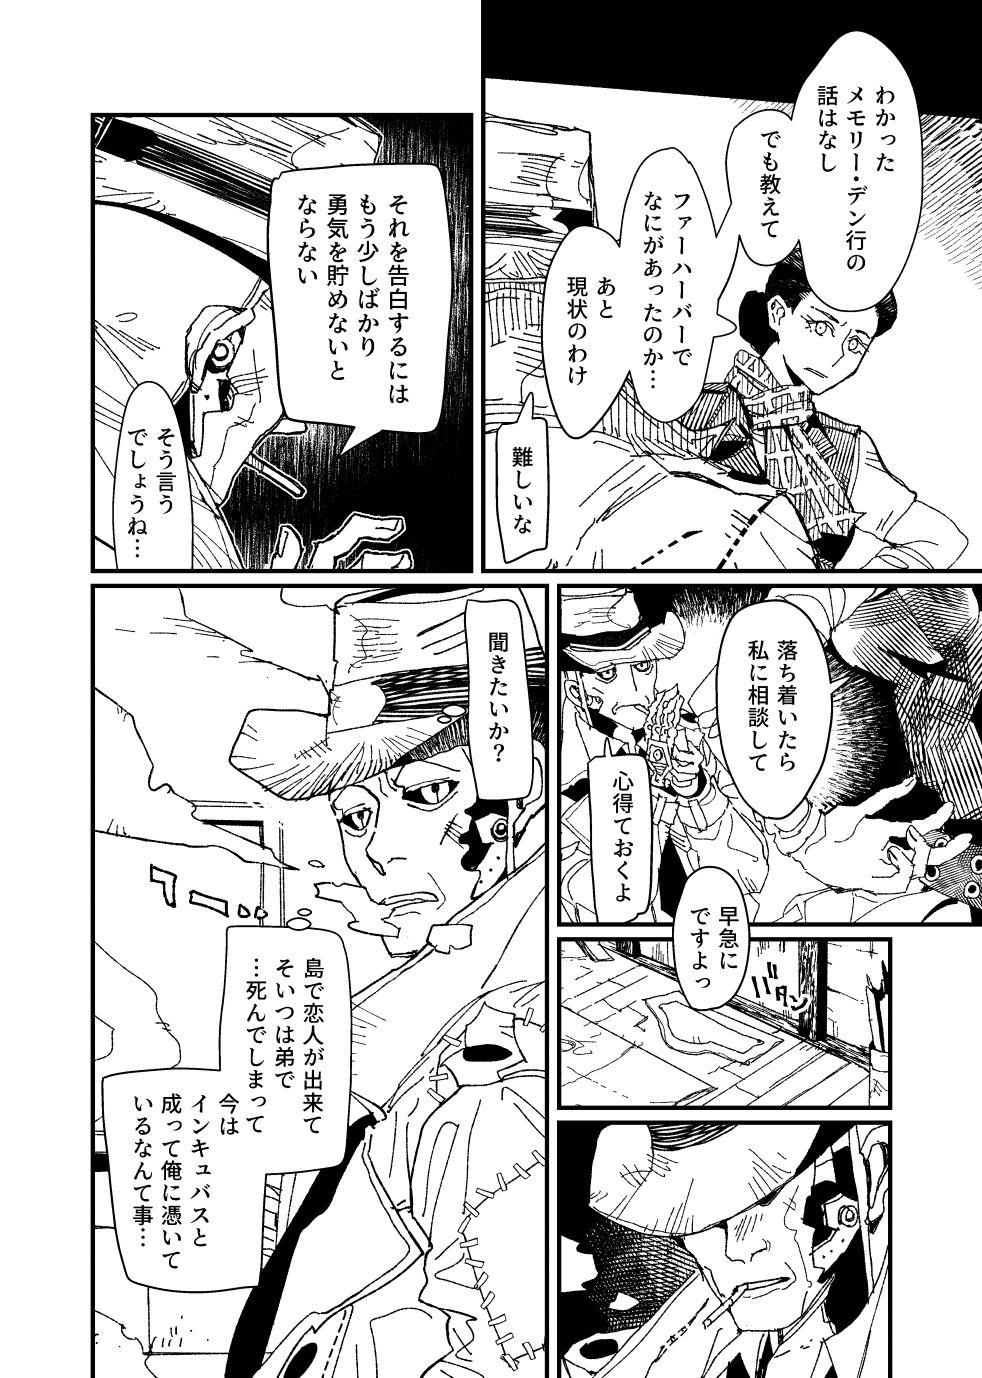 [Tanokura] FO4 [R18] Dimaniku Manga 17